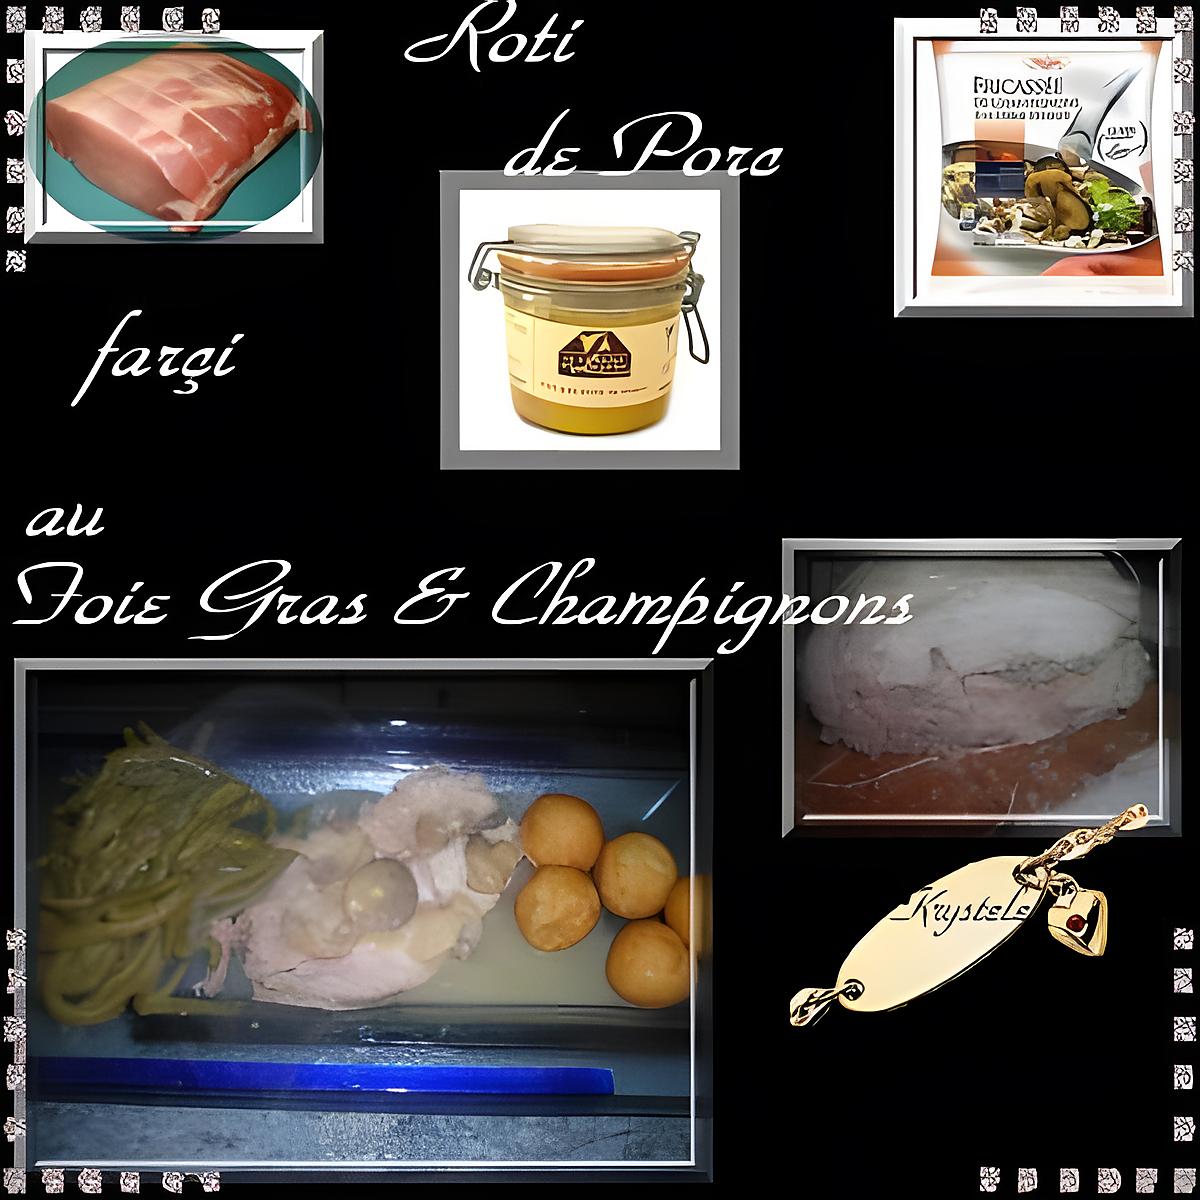 recette roti farçi au foie gras